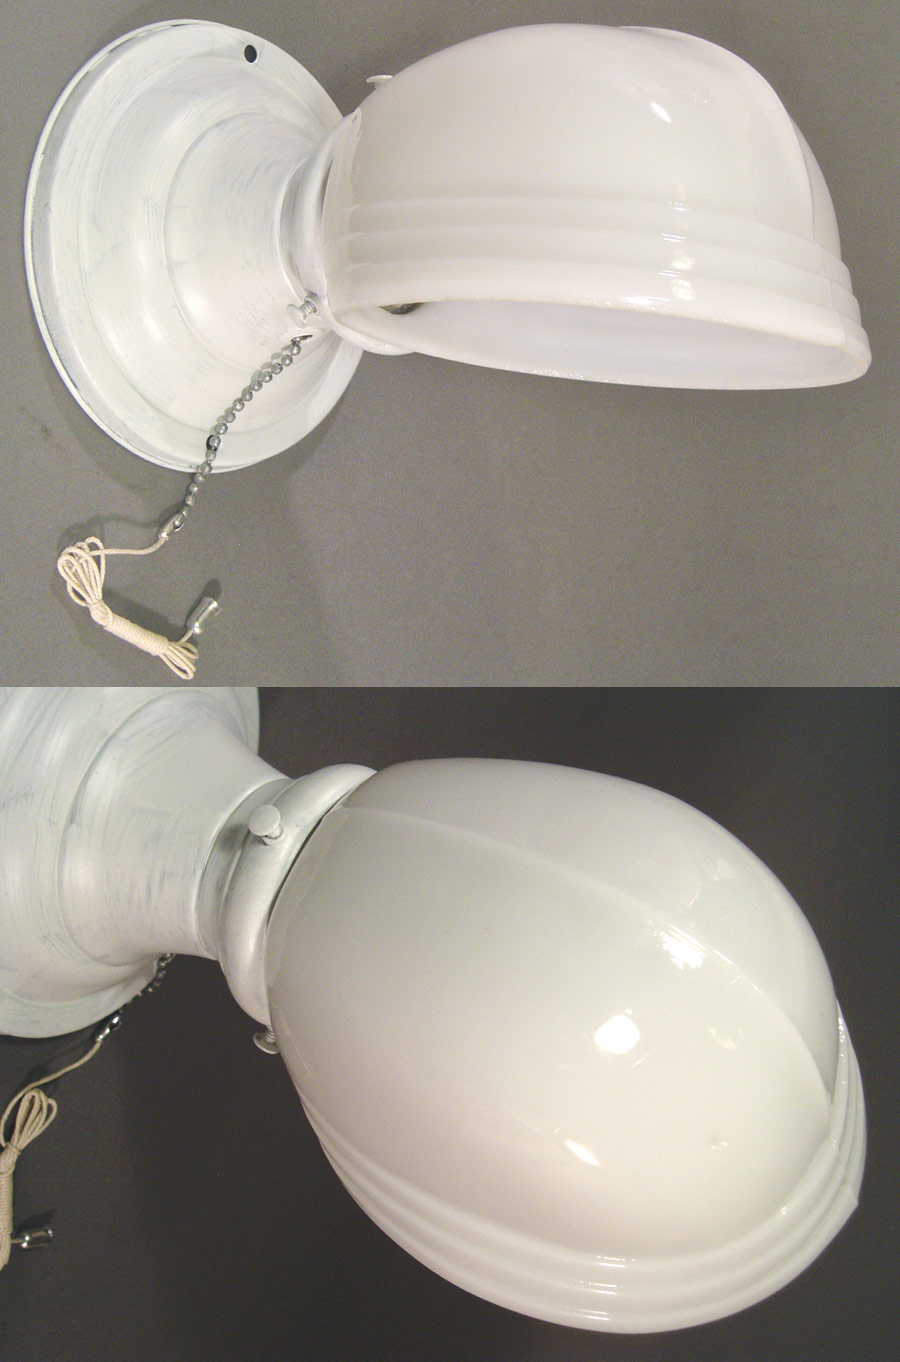 193040's "ART DECO" Milk Glass Bathroom Lamp F U N N Y